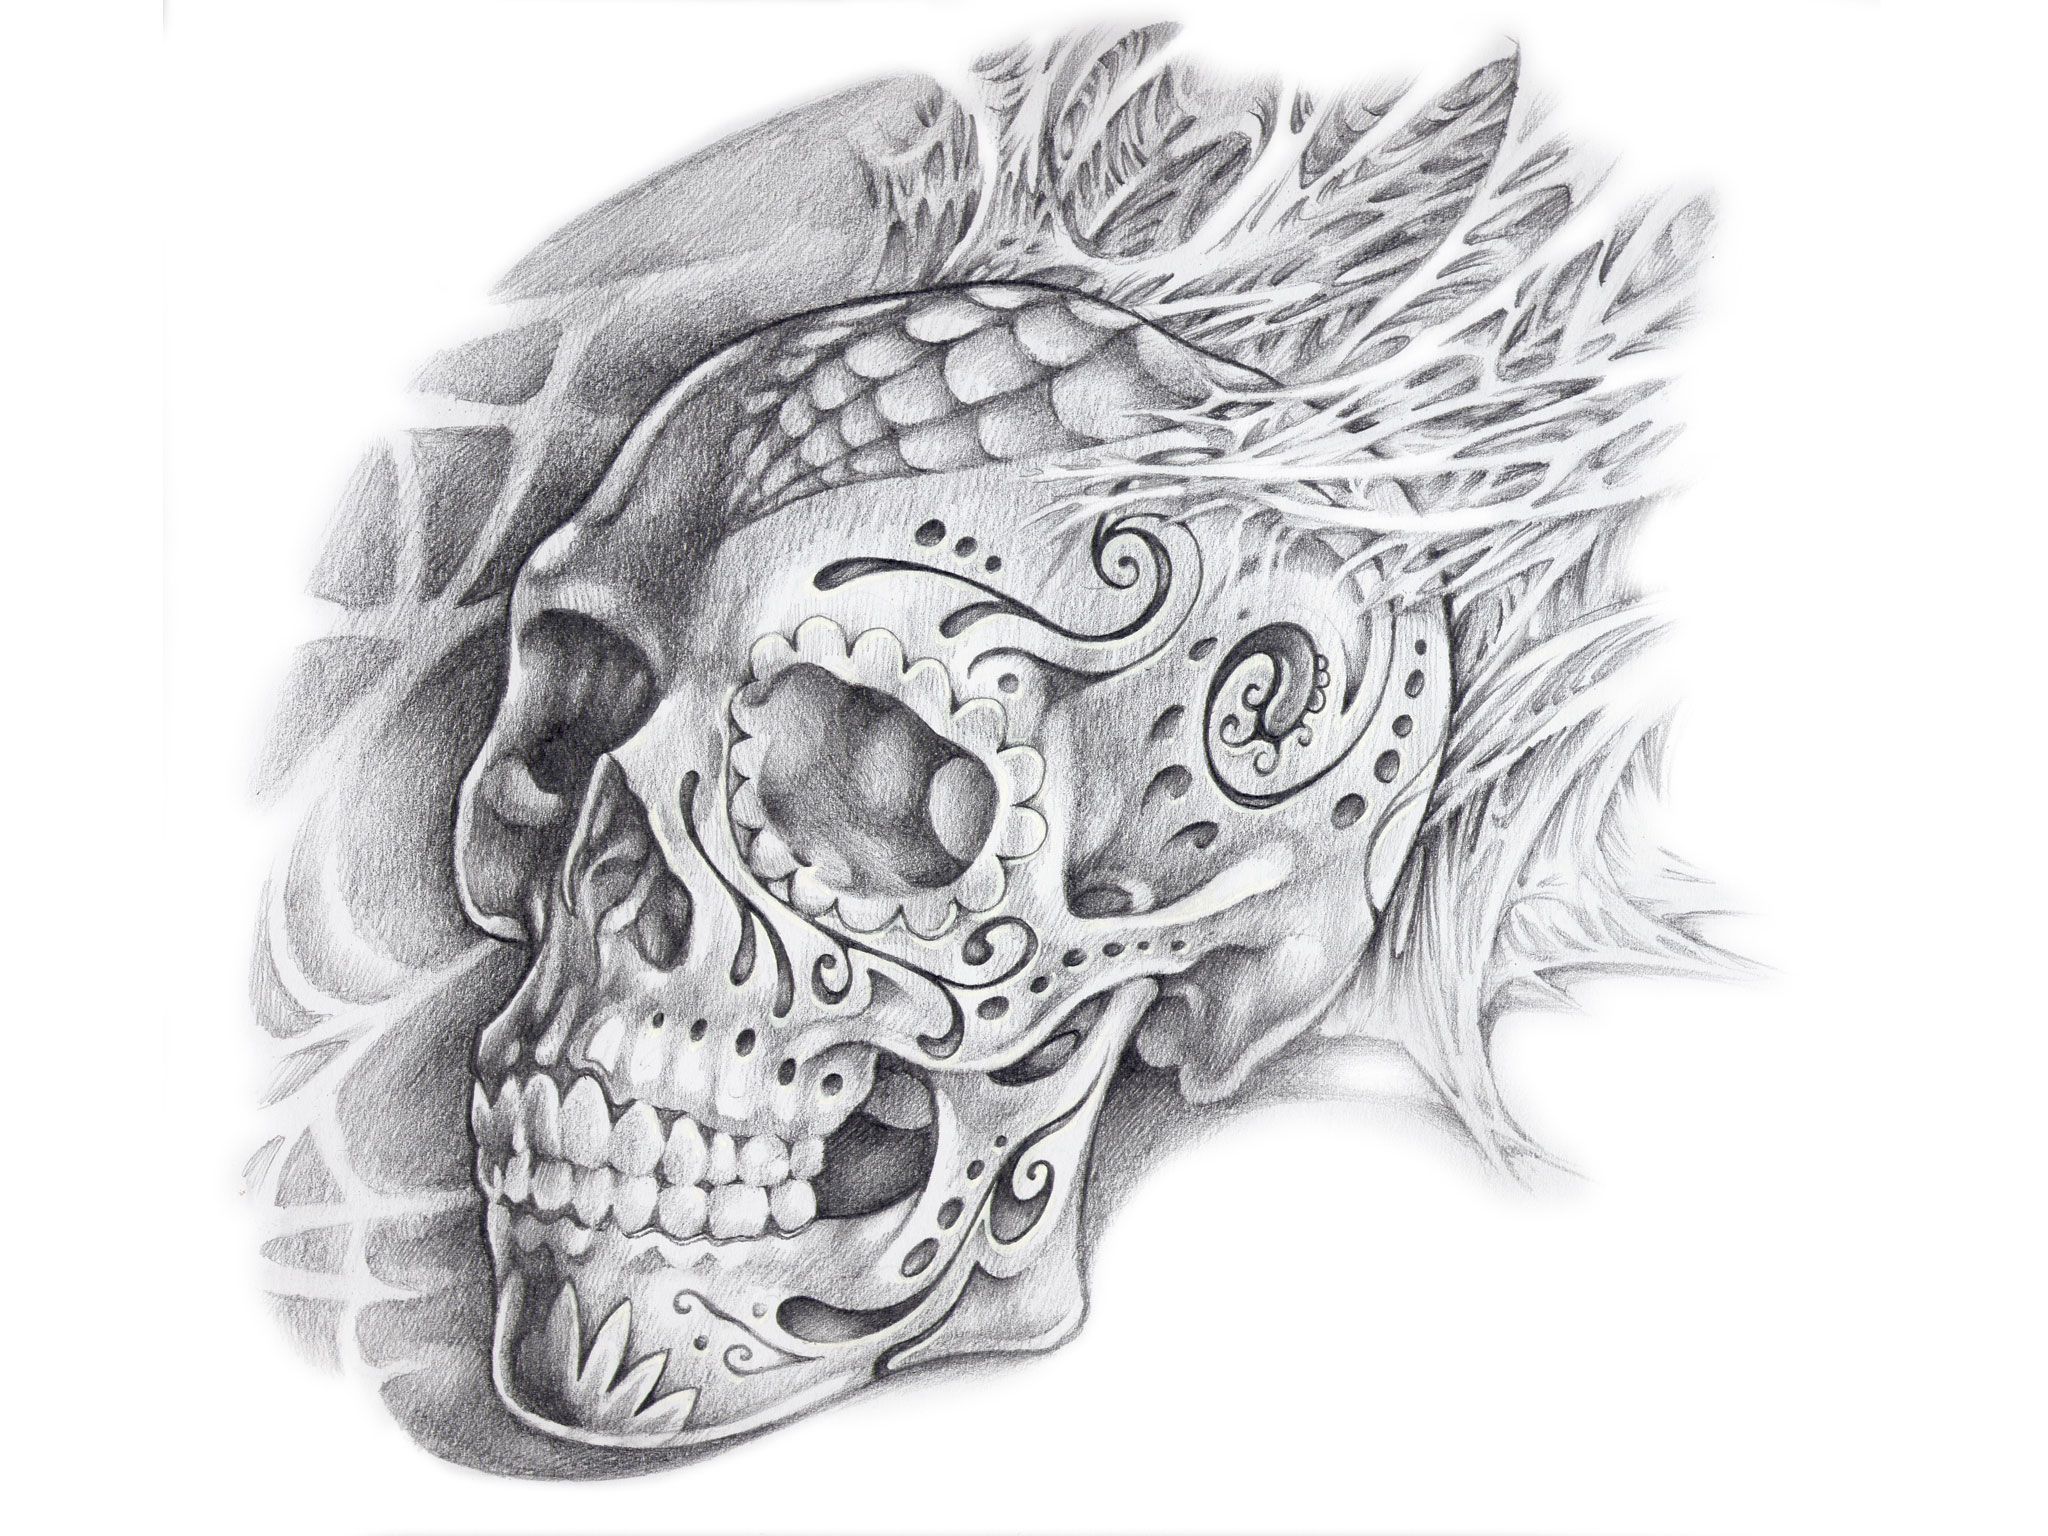 Candy skull tattoo, Tattoo designs .com